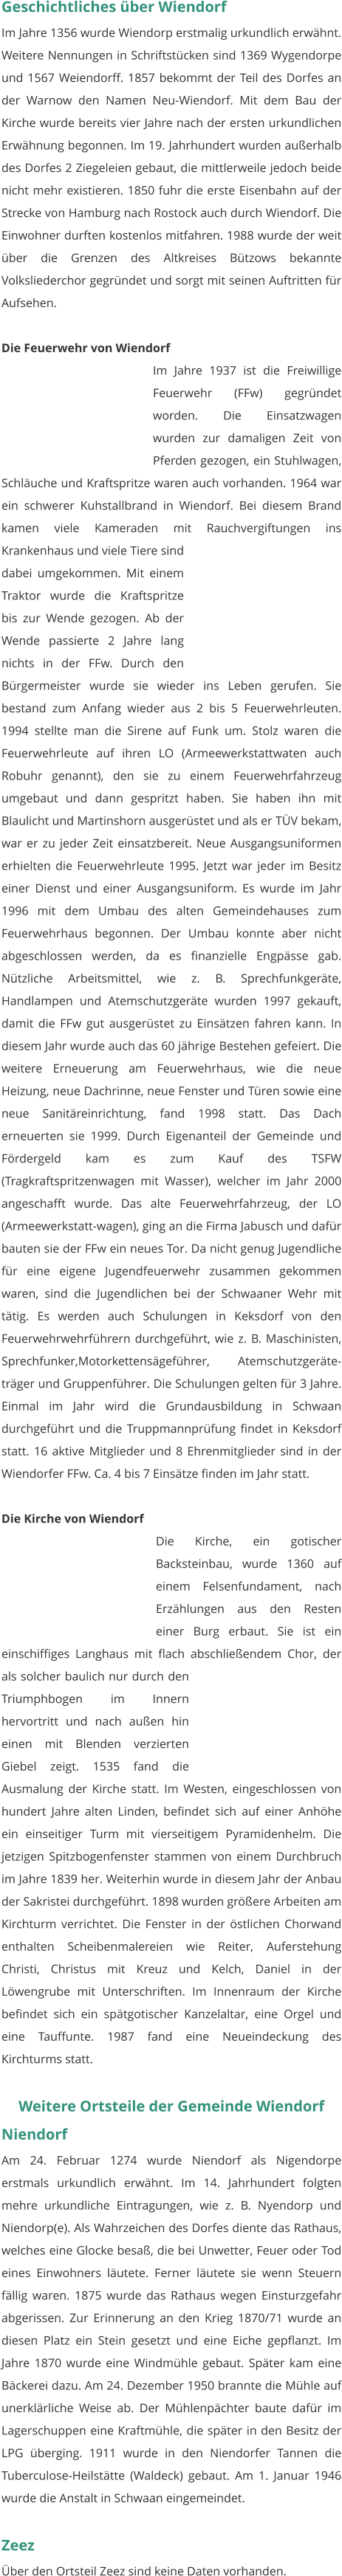 Geschichtliches über Wiendorf Im Jahre 1356 wurde Wiendorp erstmalig urkundlich erwähnt. Weitere Nennungen in Schriftstücken sind 1369 Wygendorpe und 1567 Weiendorff. 1857 bekommt der Teil des Dorfes an der Warnow den Namen Neu-Wiendorf. Mit dem Bau der Kirche wurde bereits vier Jahre nach der ersten urkundlichen Erwähnung begonnen. Im 19. Jahrhundert wurden außerhalb des Dorfes 2 Ziegeleien gebaut, die mittlerweile jedoch beide nicht mehr existieren. 1850 fuhr die erste Eisenbahn auf der Strecke von Hamburg nach Rostock auch durch Wiendorf. Die Einwohner durften kostenlos mitfahren. 1988 wurde der weit über die Grenzen des Altkreises Bützows bekannte Volksliederchor gegründet und sorgt mit seinen Auftritten für Aufsehen.  Die Feuerwehr von Wiendorf Im Jahre 1937 ist die Freiwillige Feuerwehr (FFw) gegründet worden. Die Einsatzwagen wurden zur damaligen Zeit von Pferden gezogen, ein Stuhlwagen, Schläuche und Kraftspritze waren auch vorhanden. 1964 war ein schwerer Kuhstallbrand in Wiendorf. Bei diesem Brand kamen viele Kameraden mit Rauchvergiftungen ins Krankenhaus und viele Tiere sind dabei umgekommen. Mit einem Traktor wurde die Kraftspritze bis zur Wende gezogen. Ab der Wende passierte 2 Jahre lang nichts in der FFw. Durch den Bürgermeister wurde sie wieder ins Leben gerufen. Sie bestand zum Anfang wieder aus 2 bis 5 Feuerwehrleuten. 1994 stellte man die Sirene auf Funk um. Stolz waren die Feuerwehrleute auf ihren LO (Armeewerkstattwaten auch Robuhr genannt), den sie zu einem Feuerwehrfahrzeug umgebaut und dann gespritzt haben. Sie haben ihn mit Blaulicht und Martinshorn ausgerüstet und als er TÜV bekam, war er zu jeder Zeit einsatzbereit. Neue Ausgangsuniformen erhielten die Feuerwehrleute 1995. Jetzt war jeder im Besitz einer Dienst und einer Ausgangsuniform. Es wurde im Jahr 1996 mit dem Umbau des alten Gemeindehauses zum Feuerwehrhaus begonnen. Der Umbau konnte aber nicht abgeschlossen werden, da es finanzielle Engpässe gab. Nützliche Arbeitsmittel, wie z. B. Sprechfunkgeräte, Handlampen und Atemschutzgeräte wurden 1997 gekauft, damit die FFw gut ausgerüstet zu Einsätzen fahren kann. In diesem Jahr wurde auch das 60 jährige Bestehen gefeiert. Die weitere Erneuerung am Feuerwehrhaus, wie die neue Heizung, neue Dachrinne, neue Fenster und Türen sowie eine neue Sanitäreinrichtung, fand 1998 statt. Das Dach erneuerten sie 1999. Durch Eigenanteil der Gemeinde und Fördergeld kam es zum Kauf des TSFW (Tragkraftspritzenwagen mit Wasser), welcher im Jahr 2000 angeschafft wurde. Das alte Feuerwehrfahrzeug, der LO (Armeewerkstatt-wagen), ging an die Firma Jabusch und dafür bauten sie der FFw ein neues Tor. Da nicht genug Jugendliche für eine eigene Jugendfeuerwehr zusammen gekommen waren, sind die Jugendlichen bei der Schwaaner Wehr mit tätig. Es werden auch Schulungen in Keksdorf von den Feuerwehrwehrführern durchgeführt, wie z. B. Maschinisten, Sprechfunker,Motorkettensägeführer, Atemschutzgeräte-träger und Gruppenführer. Die Schulungen gelten für 3 Jahre. Einmal im Jahr wird die Grundausbildung in Schwaan durchgeführt und die Truppmannprüfung findet in Keksdorf statt. 16 aktive Mitglieder und 8 Ehrenmitglieder sind in der Wiendorfer FFw. Ca. 4 bis 7 Einsätze finden im Jahr statt.   Die Kirche von Wiendorf Die Kirche, ein gotischer Backsteinbau, wurde 1360 auf einem Felsenfundament, nach Erzählungen aus den Resten einer Burg erbaut. Sie ist ein einschiffiges Langhaus mit flach abschließendem Chor, der als solcher baulich nur durch den Triumphbogen im Innern hervortritt und nach außen hin einen mit Blenden verzierten Giebel zeigt. 1535 fand die Ausmalung der Kirche statt. Im Westen, eingeschlossen von hundert Jahre alten Linden, befindet sich auf einer Anhöhe ein einseitiger Turm mit vierseitigem Pyramidenhelm. Die jetzigen Spitzbogenfenster stammen von einem Durchbruch im Jahre 1839 her. Weiterhin wurde in diesem Jahr der Anbau der Sakristei durchgeführt. 1898 wurden größere Arbeiten am Kirchturm verrichtet. Die Fenster in der östlichen Chorwand enthalten Scheibenmalereien wie Reiter, Auferstehung Christi, Christus mit Kreuz und Kelch, Daniel in der Löwengrube mit Unterschriften. Im Innenraum der Kirche befindet sich ein spätgotischer Kanzelaltar, eine Orgel und eine Tauffunte. 1987 fand eine Neueindeckung des Kirchturms statt.   Weitere Ortsteile der Gemeinde Wiendorf Niendorf Am 24. Februar 1274 wurde Niendorf als Nigendorpe erstmals urkundlich erwähnt. Im 14. Jahrhundert folgten mehre urkundliche Eintragungen, wie z. B. Nyendorp und Niendorp(e). Als Wahrzeichen des Dorfes diente das Rathaus, welches eine Glocke besaß, die bei Unwetter, Feuer oder Tod eines Einwohners läutete. Ferner läutete sie wenn Steuern fällig waren. 1875 wurde das Rathaus wegen Einsturzgefahr abgerissen. Zur Erinnerung an den Krieg 1870/71 wurde an diesen Platz ein Stein gesetzt und eine Eiche gepflanzt. Im Jahre 1870 wurde eine Windmühle gebaut. Später kam eine Bäckerei dazu. Am 24. Dezember 1950 brannte die Mühle auf unerklärliche Weise ab. Der Mühlenpächter baute dafür im Lagerschuppen eine Kraftmühle, die später in den Besitz der LPG überging. 1911 wurde in den Niendorfer Tannen die Tuberculose-Heilstätte (Waldeck) gebaut. Am 1. Januar 1946 wurde die Anstalt in Schwaan eingemeindet.   Zeez Über den Ortsteil Zeez sind keine Daten vorhanden.